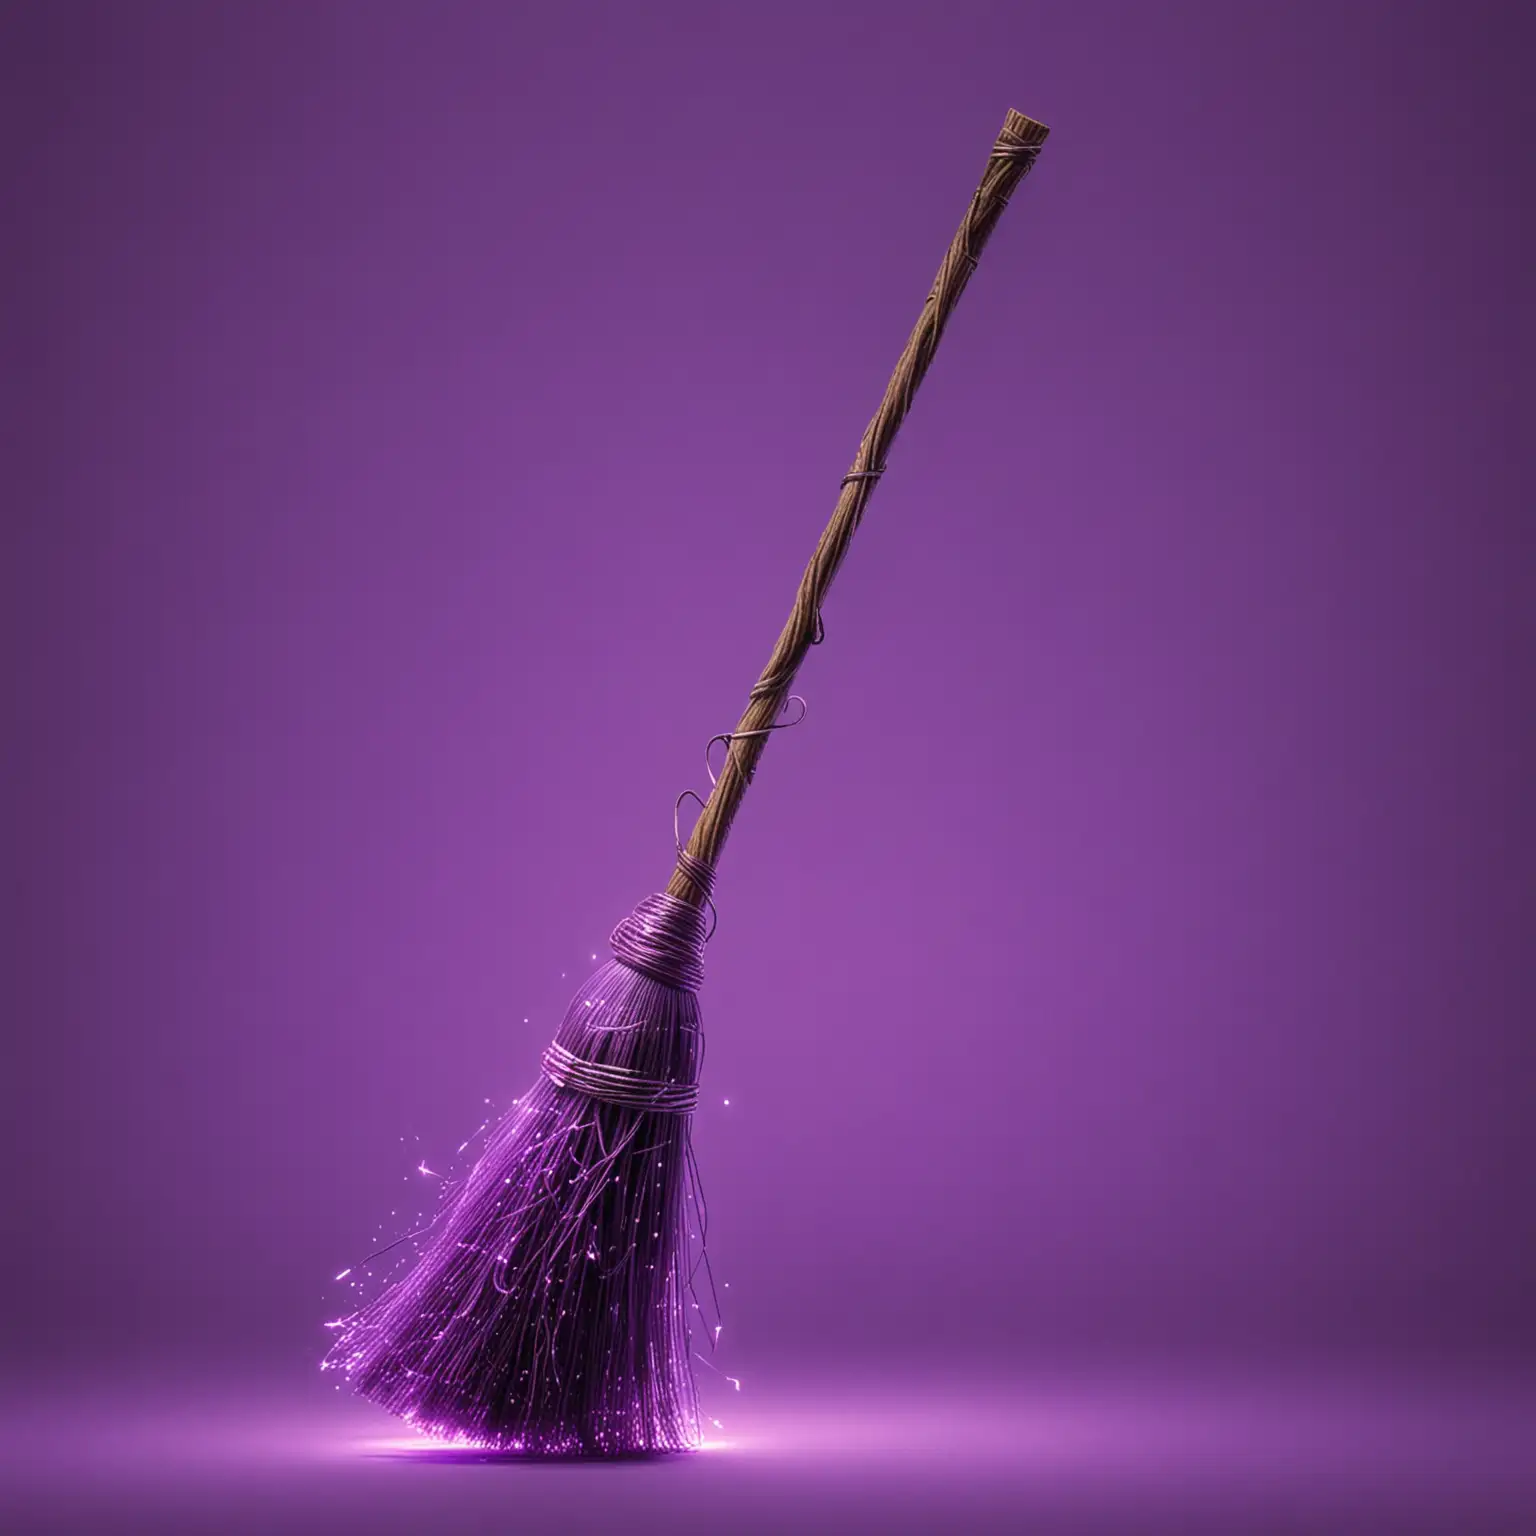 реалистичная метла магическая-ведьомская с неоновой фиолетовой подсветкой парит в воздухе
